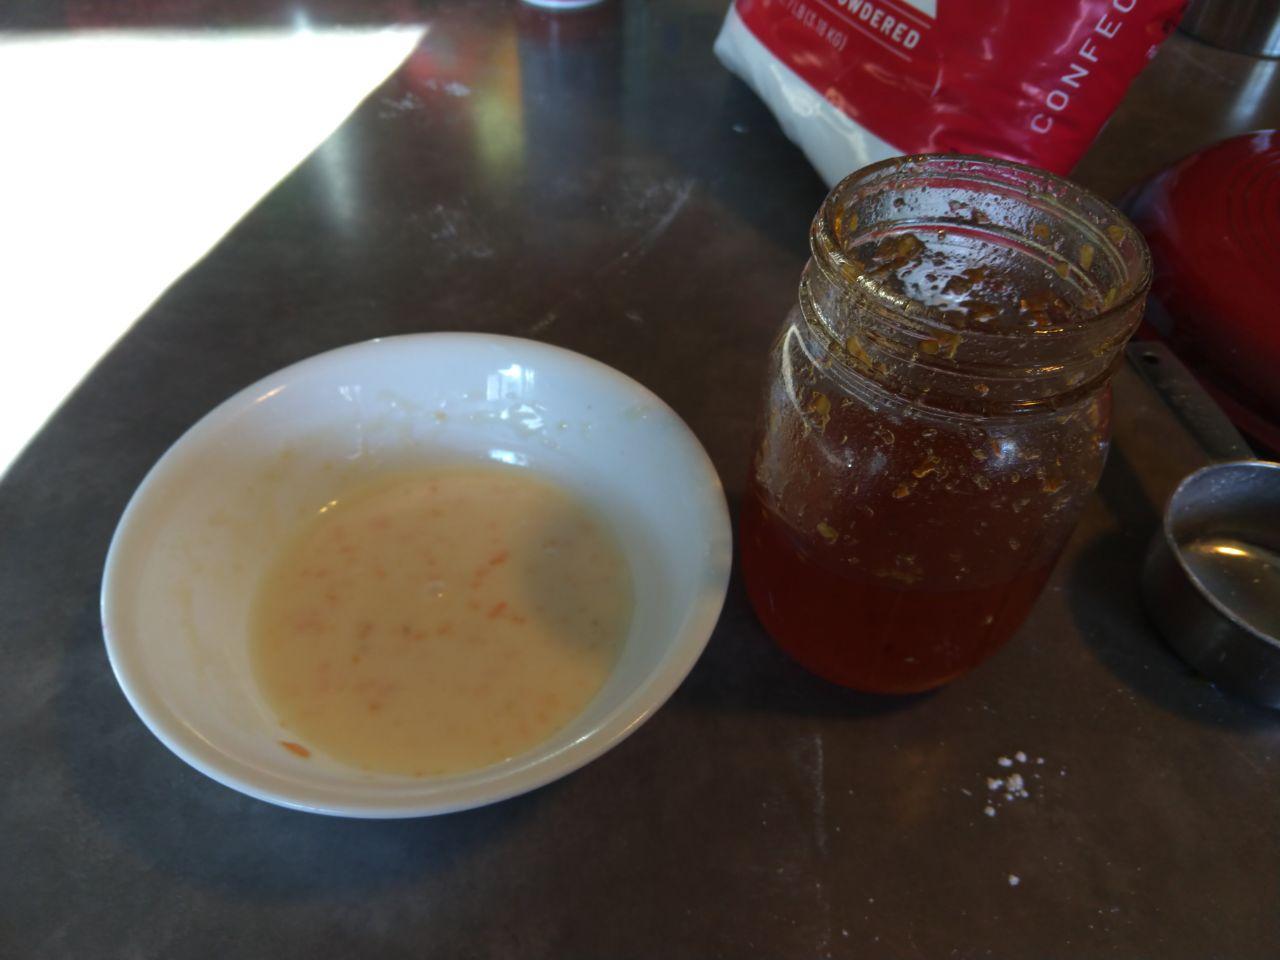 Habanero jam next to bowl of glaze.